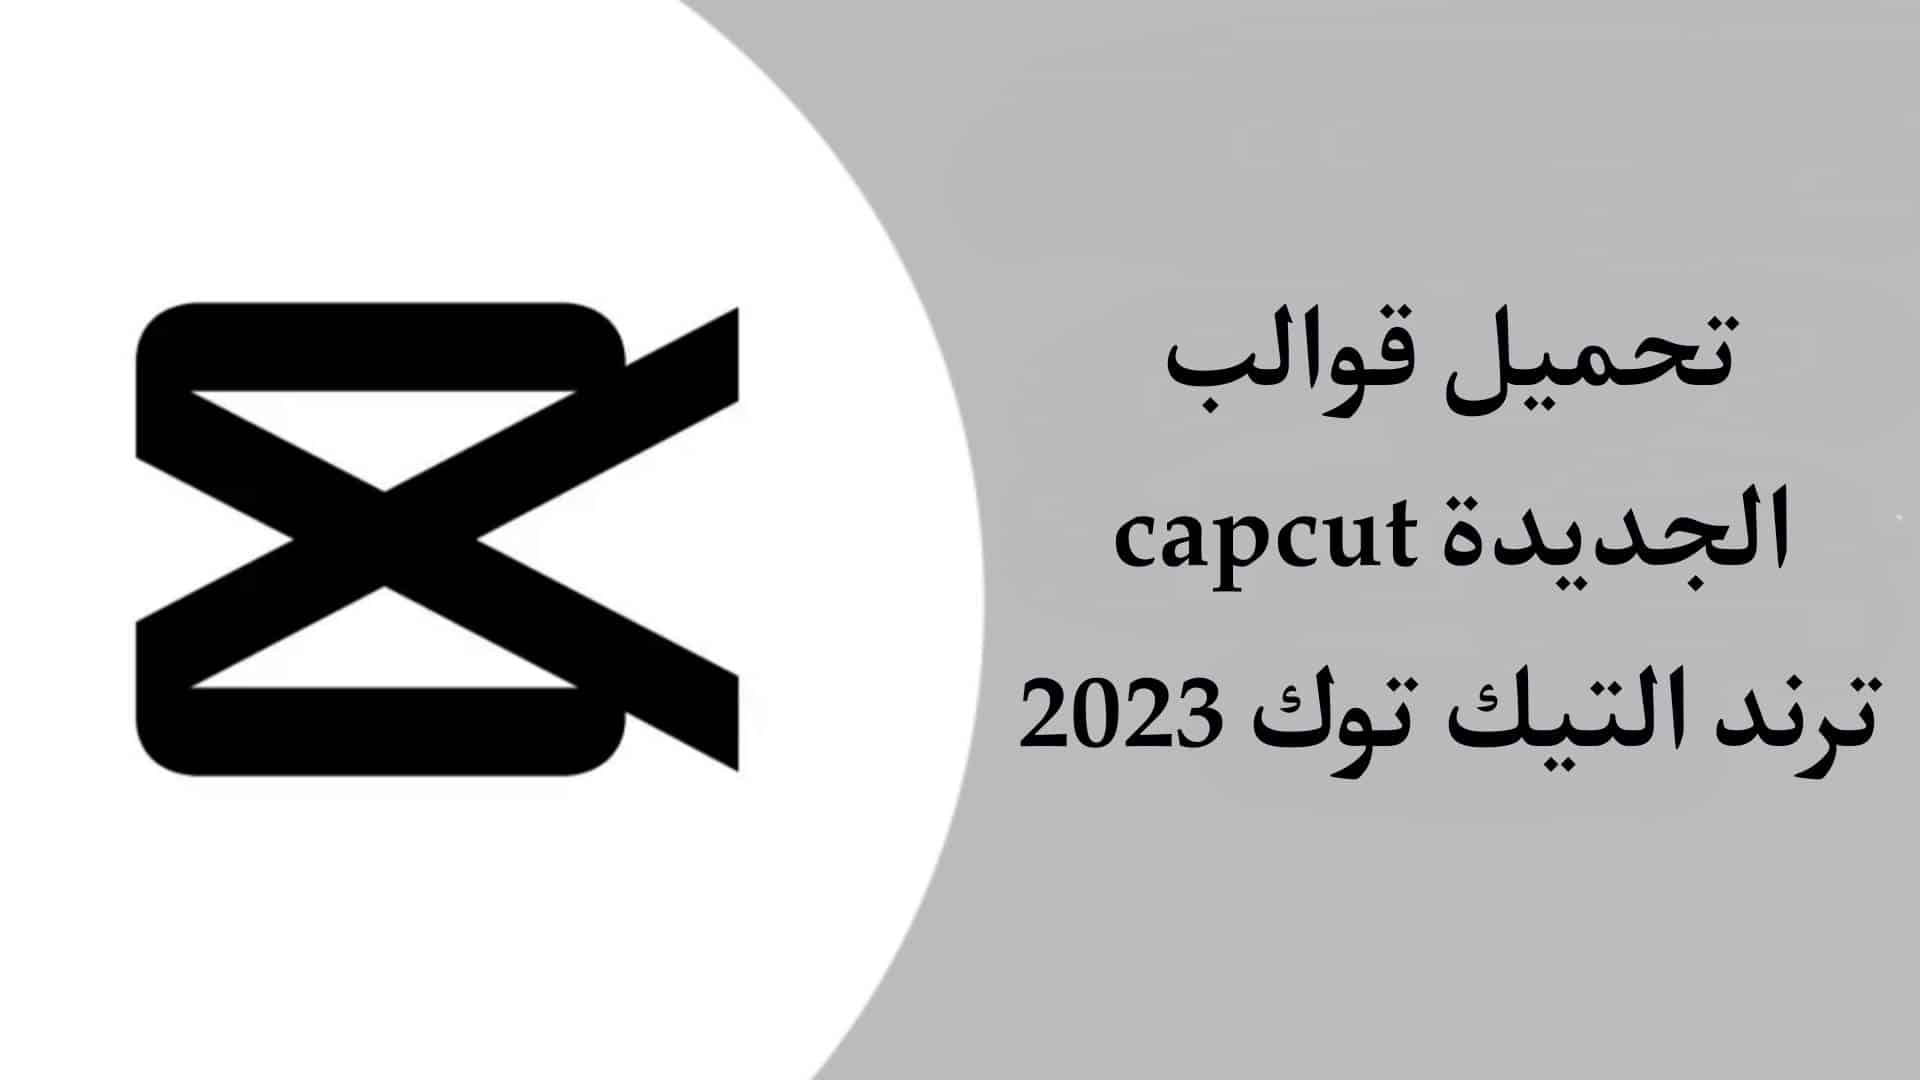 ترند التيك توك الجديد capcut شرح التصميم قالب جديد 2023